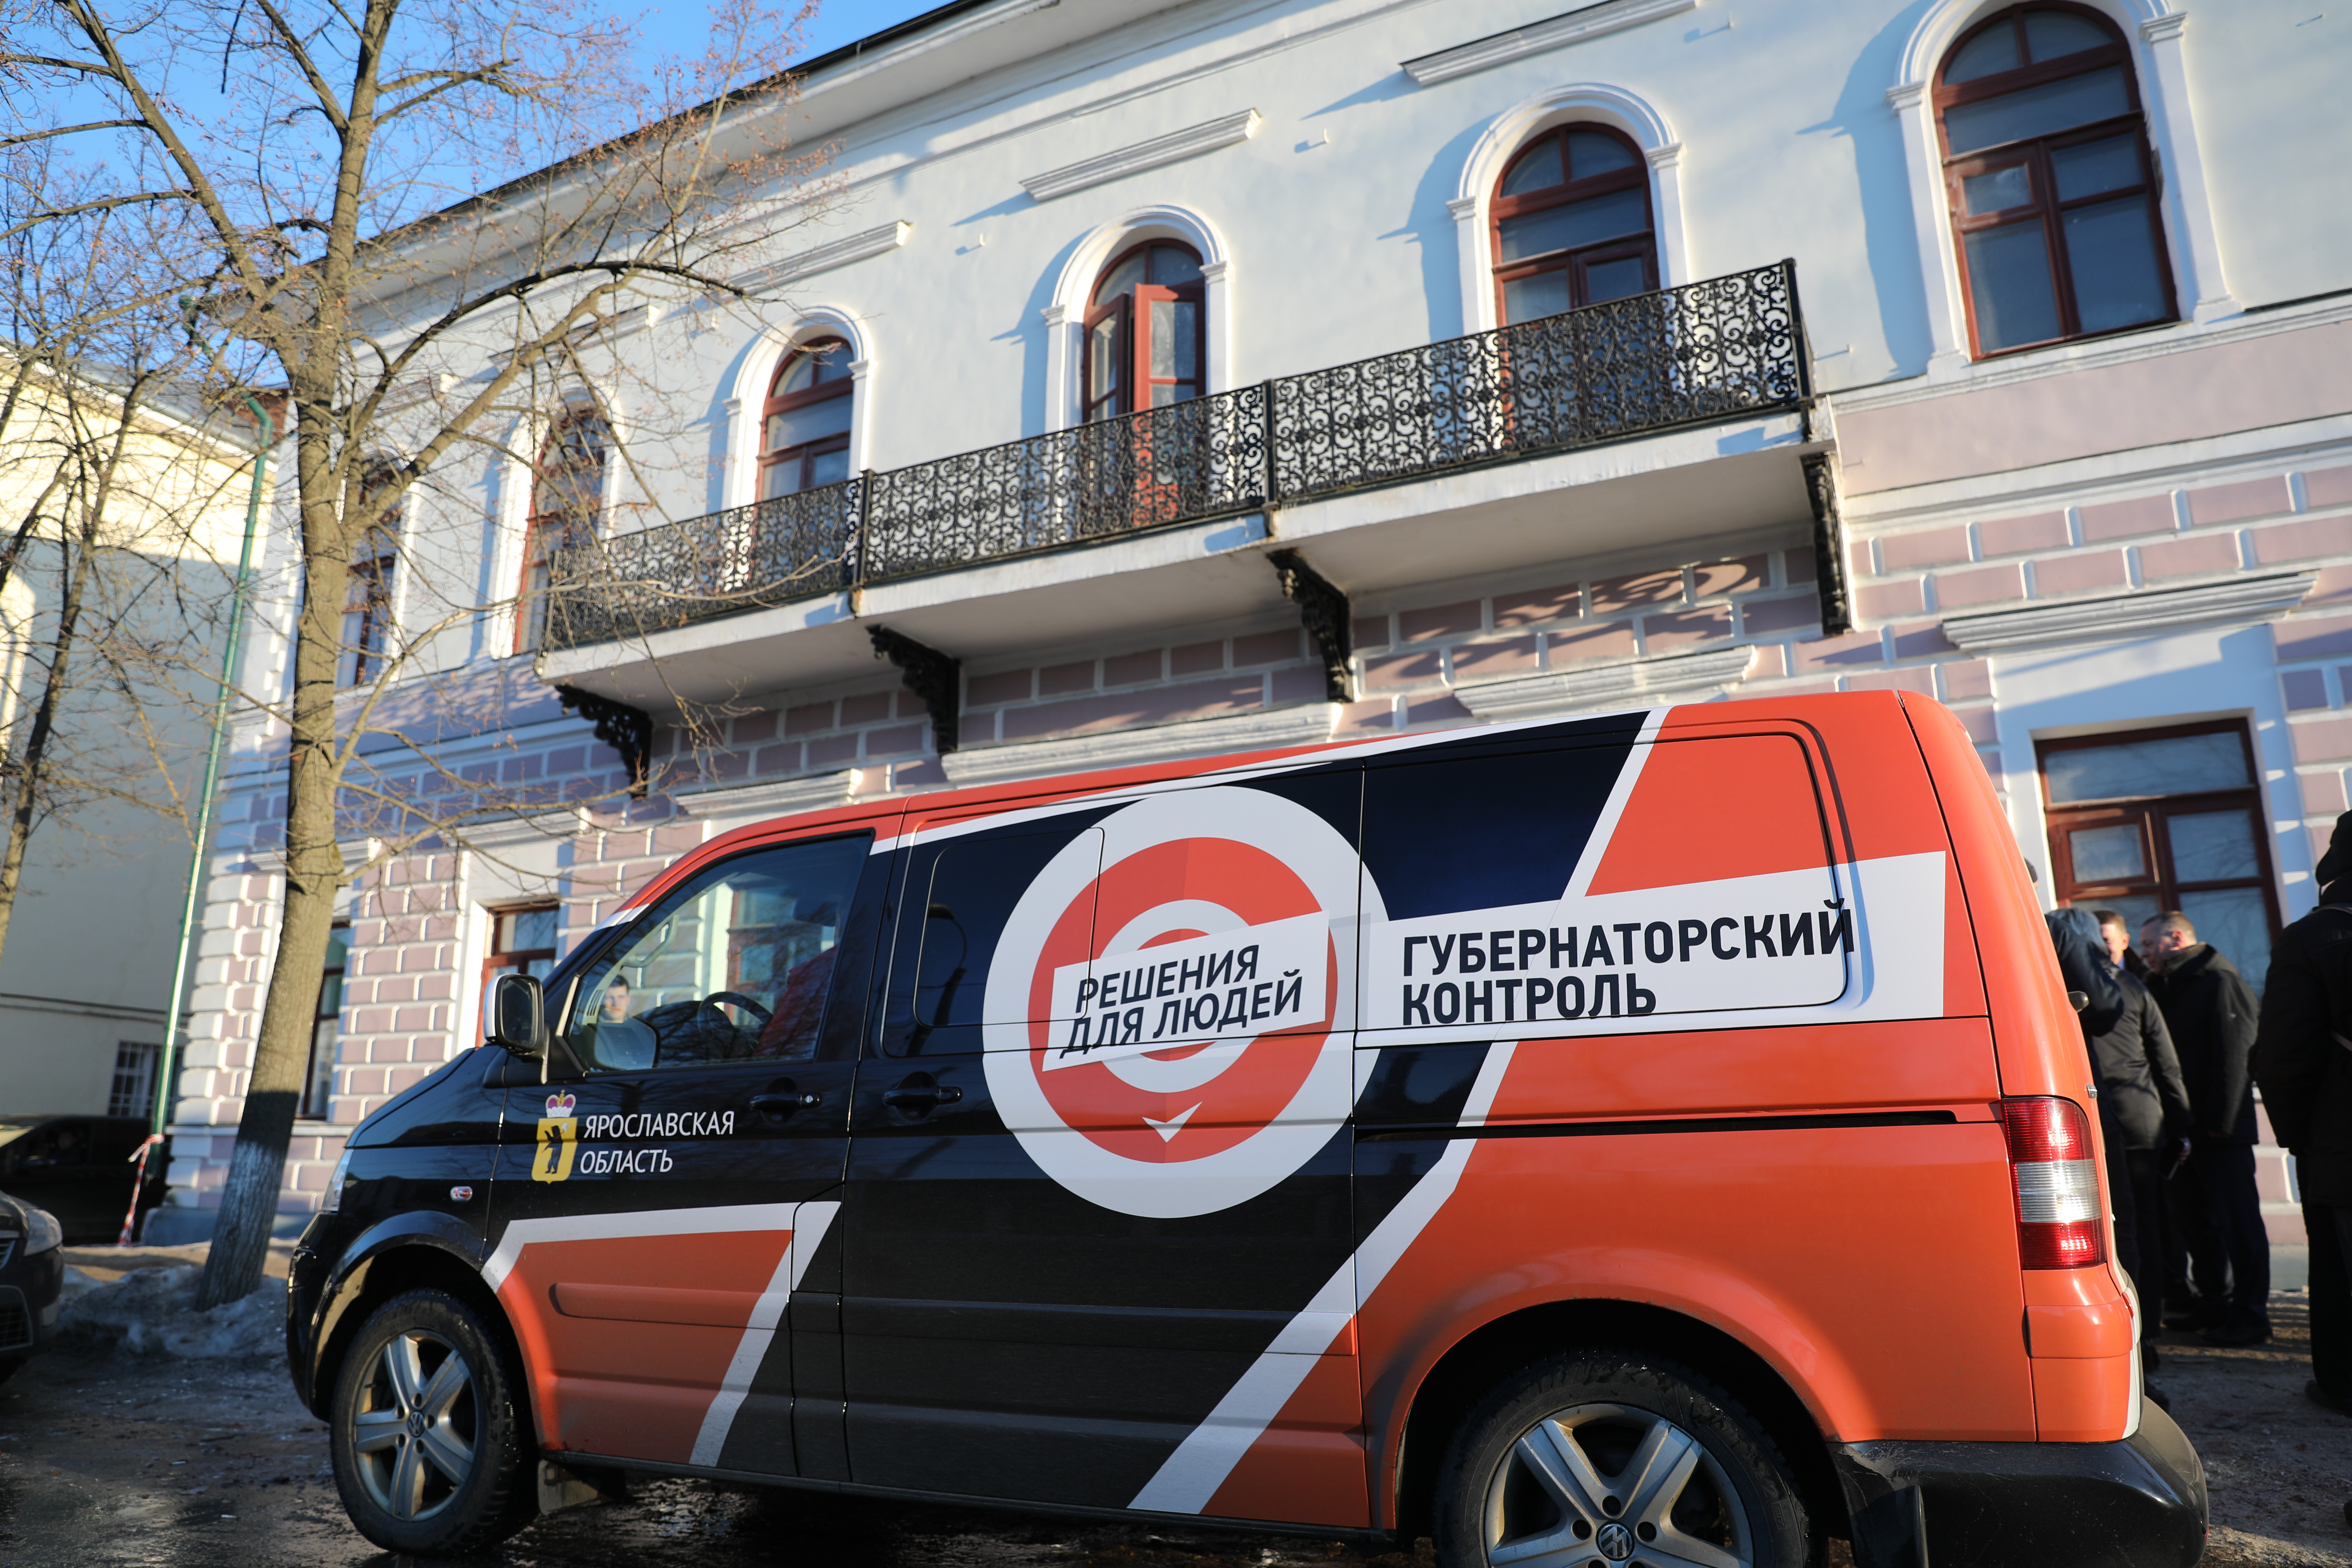 Губернаторский контроль приехал с проверкой в Переславль-Залесский 